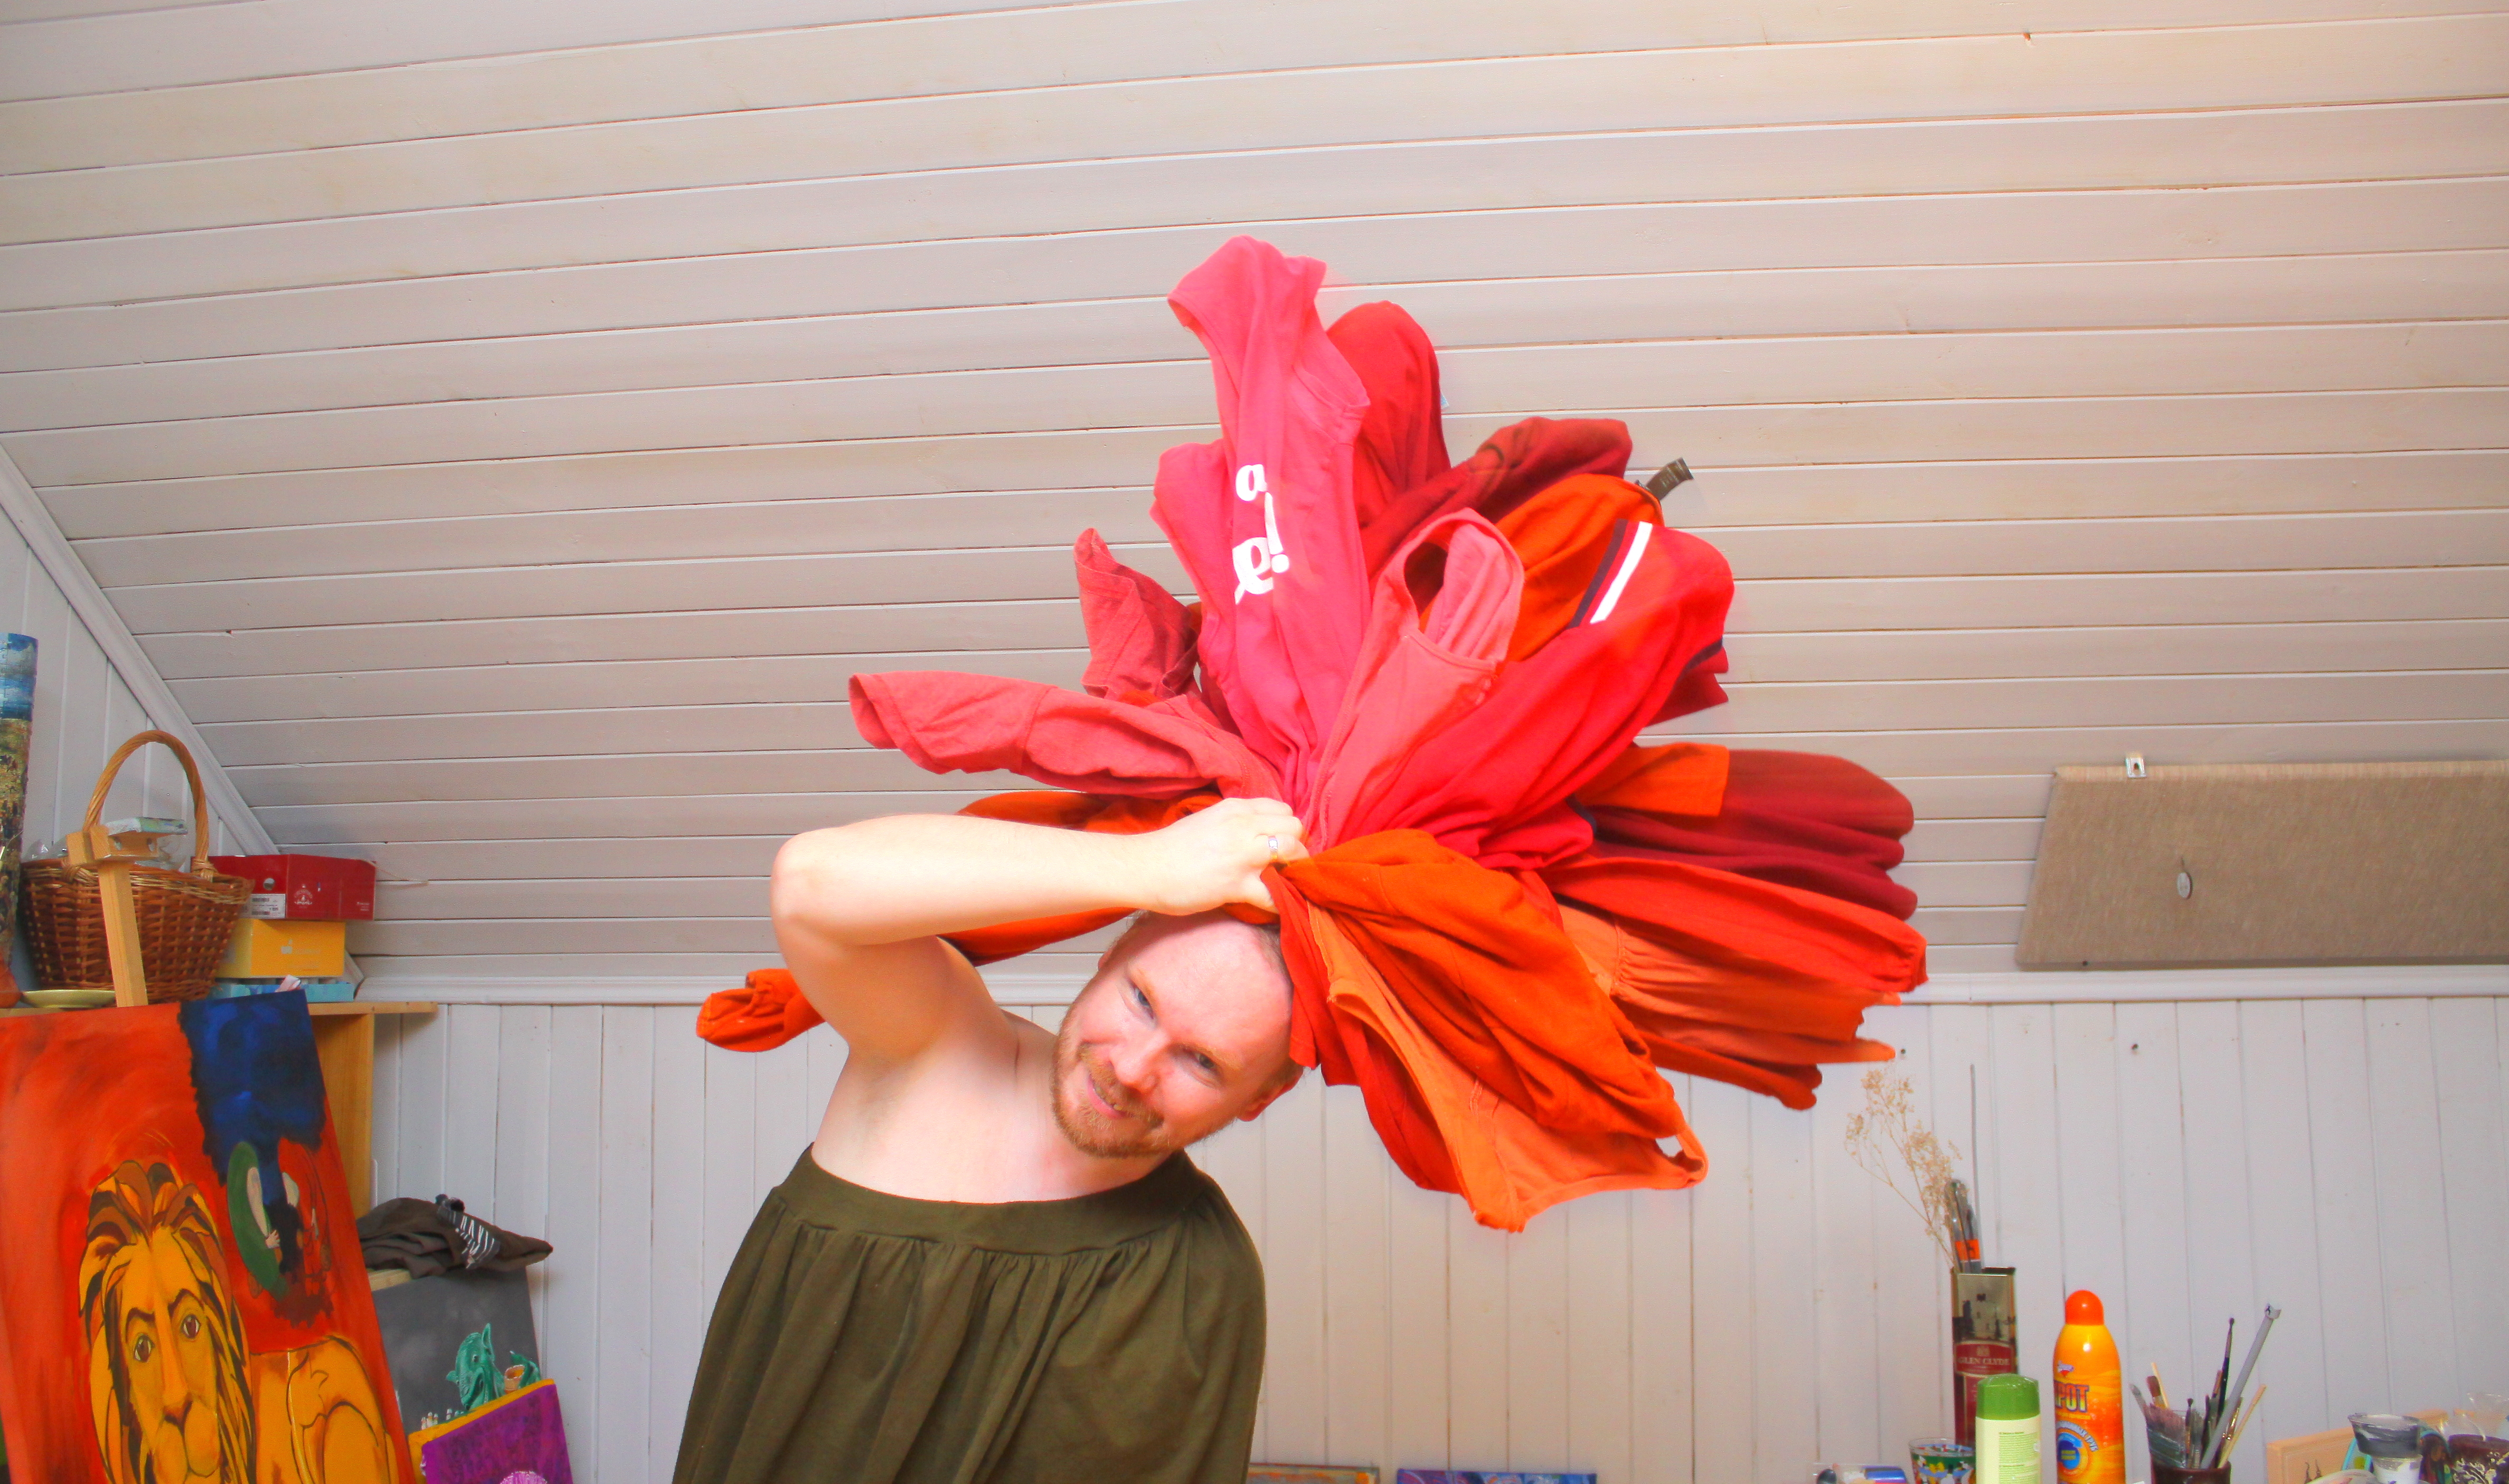 Парень с кипой красного белья на голове, изображает распустившийся цветок.